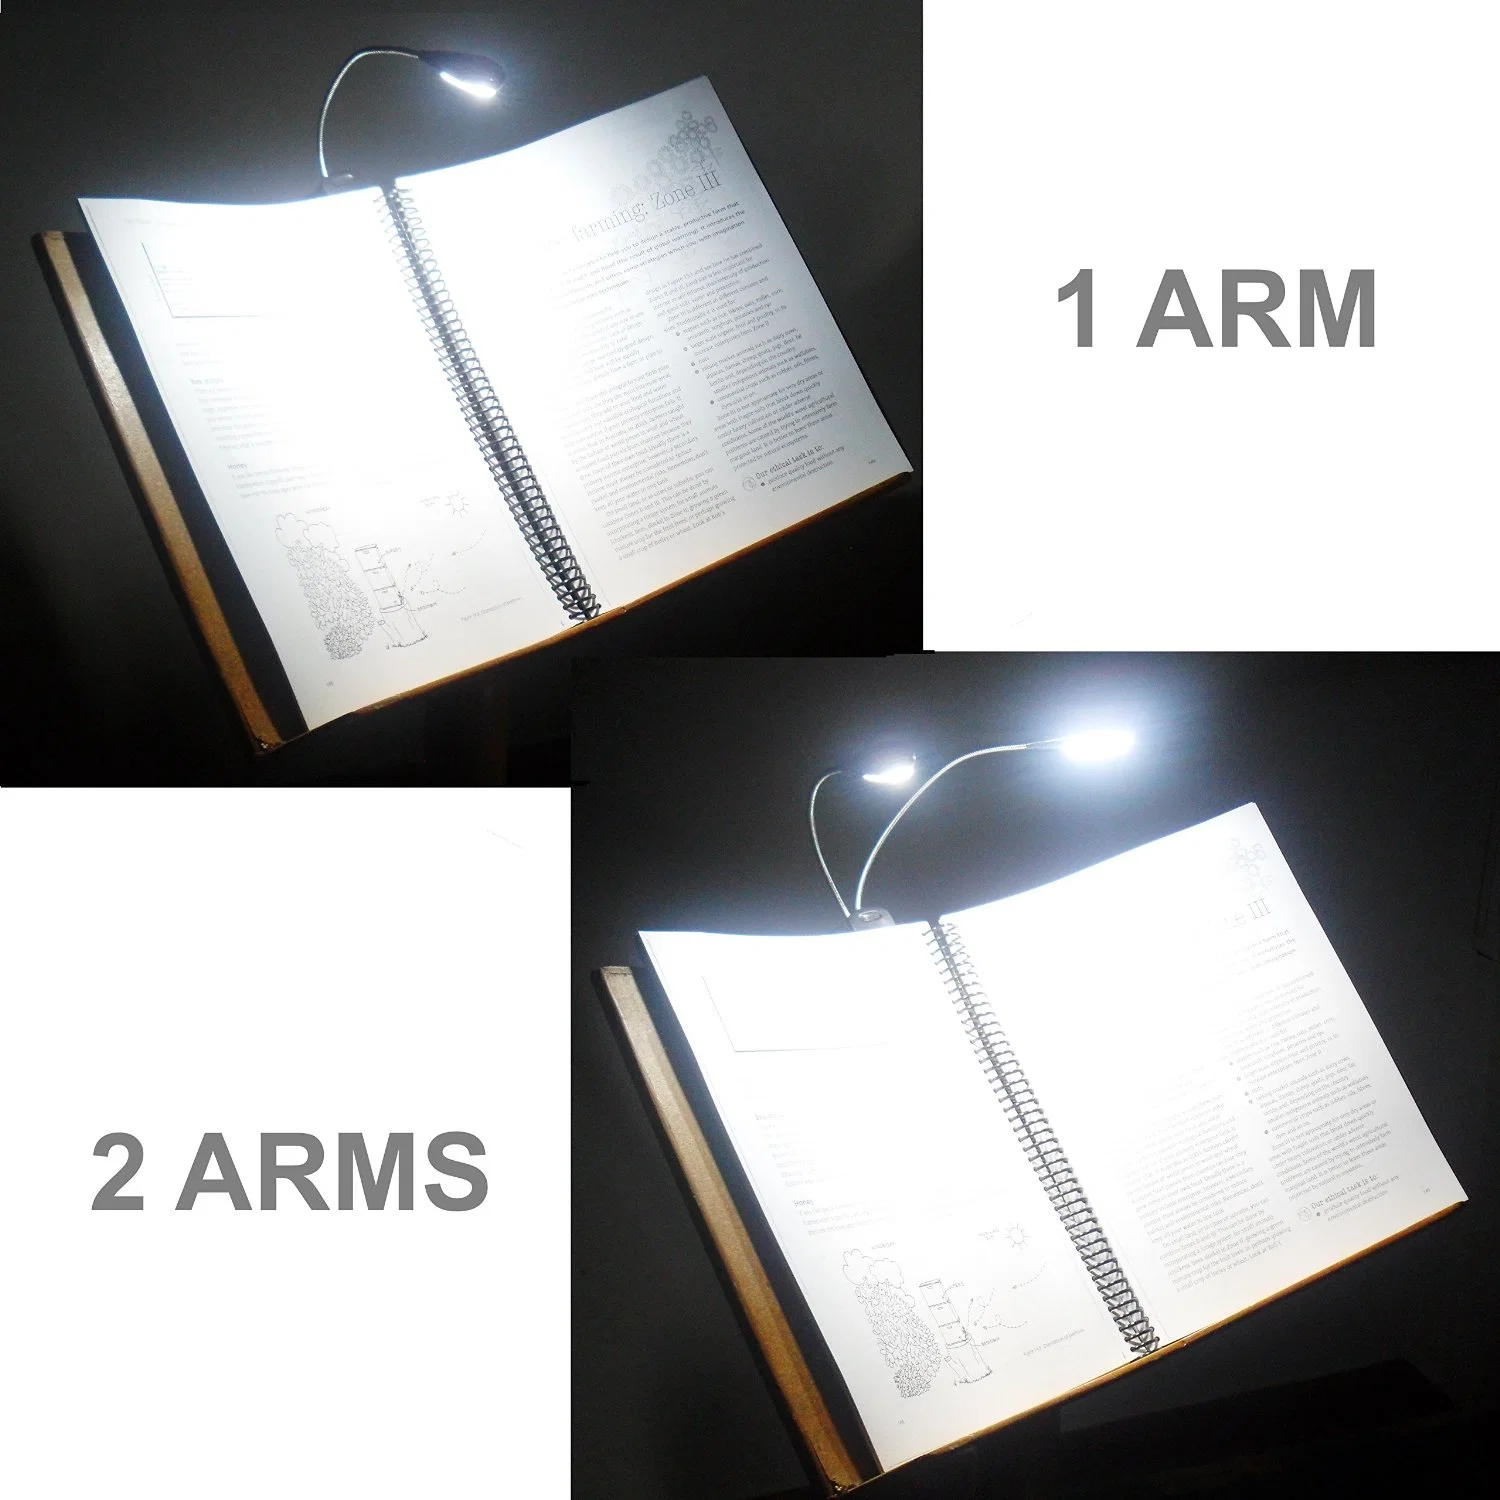 Carregador USB Dual braços flexíveis 4 LED de luz com clipe para computador portátil com Piano Livro luz de leitura